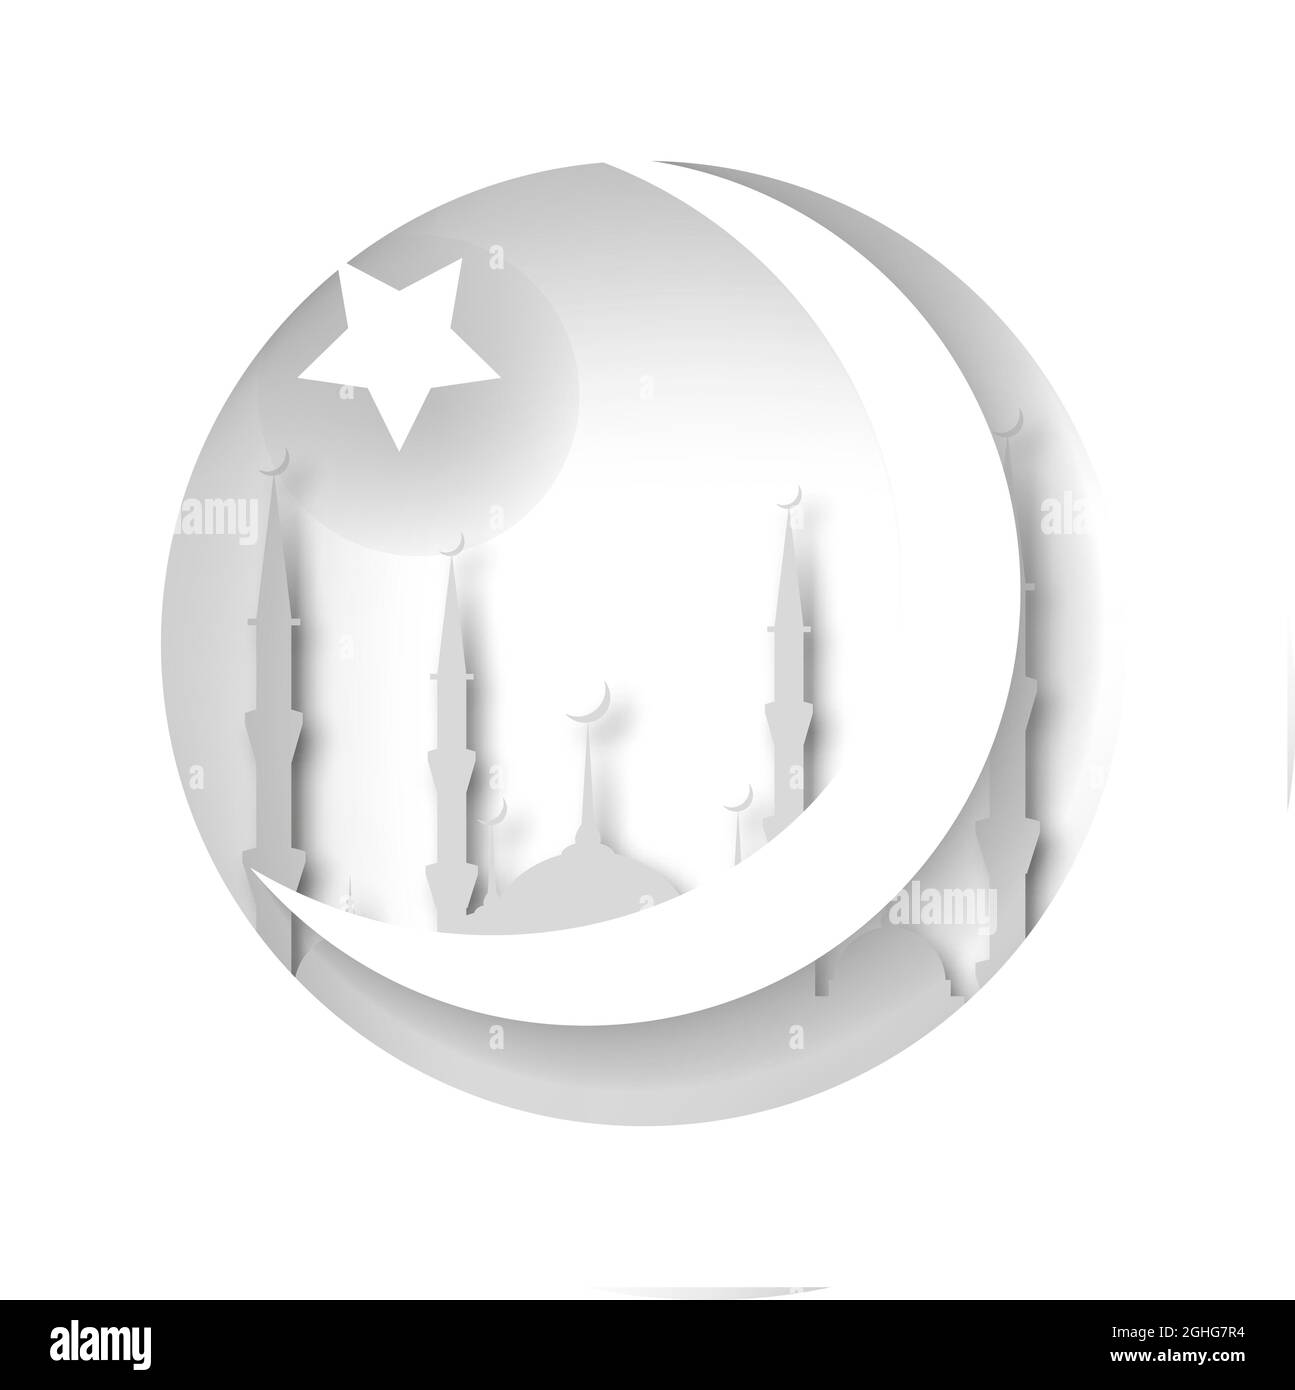 La moschea, la Crescent e la stella. Stile islamico. Tagliare dalla carta. Illustrazione Vettoriale